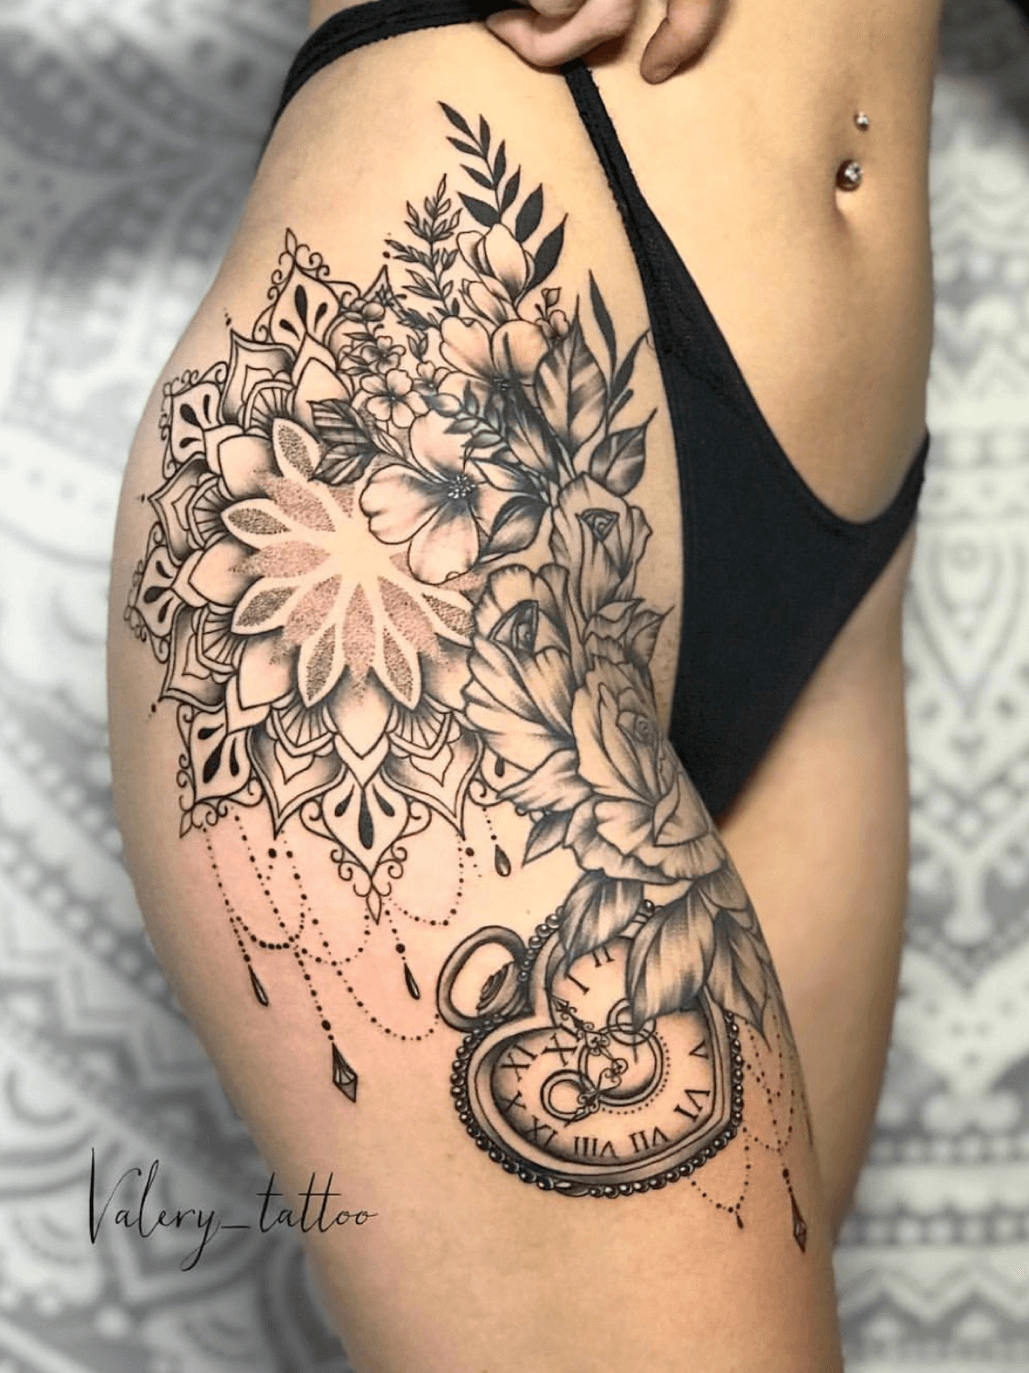 Valery tattoo • Tattoo Artist • Tattoodo